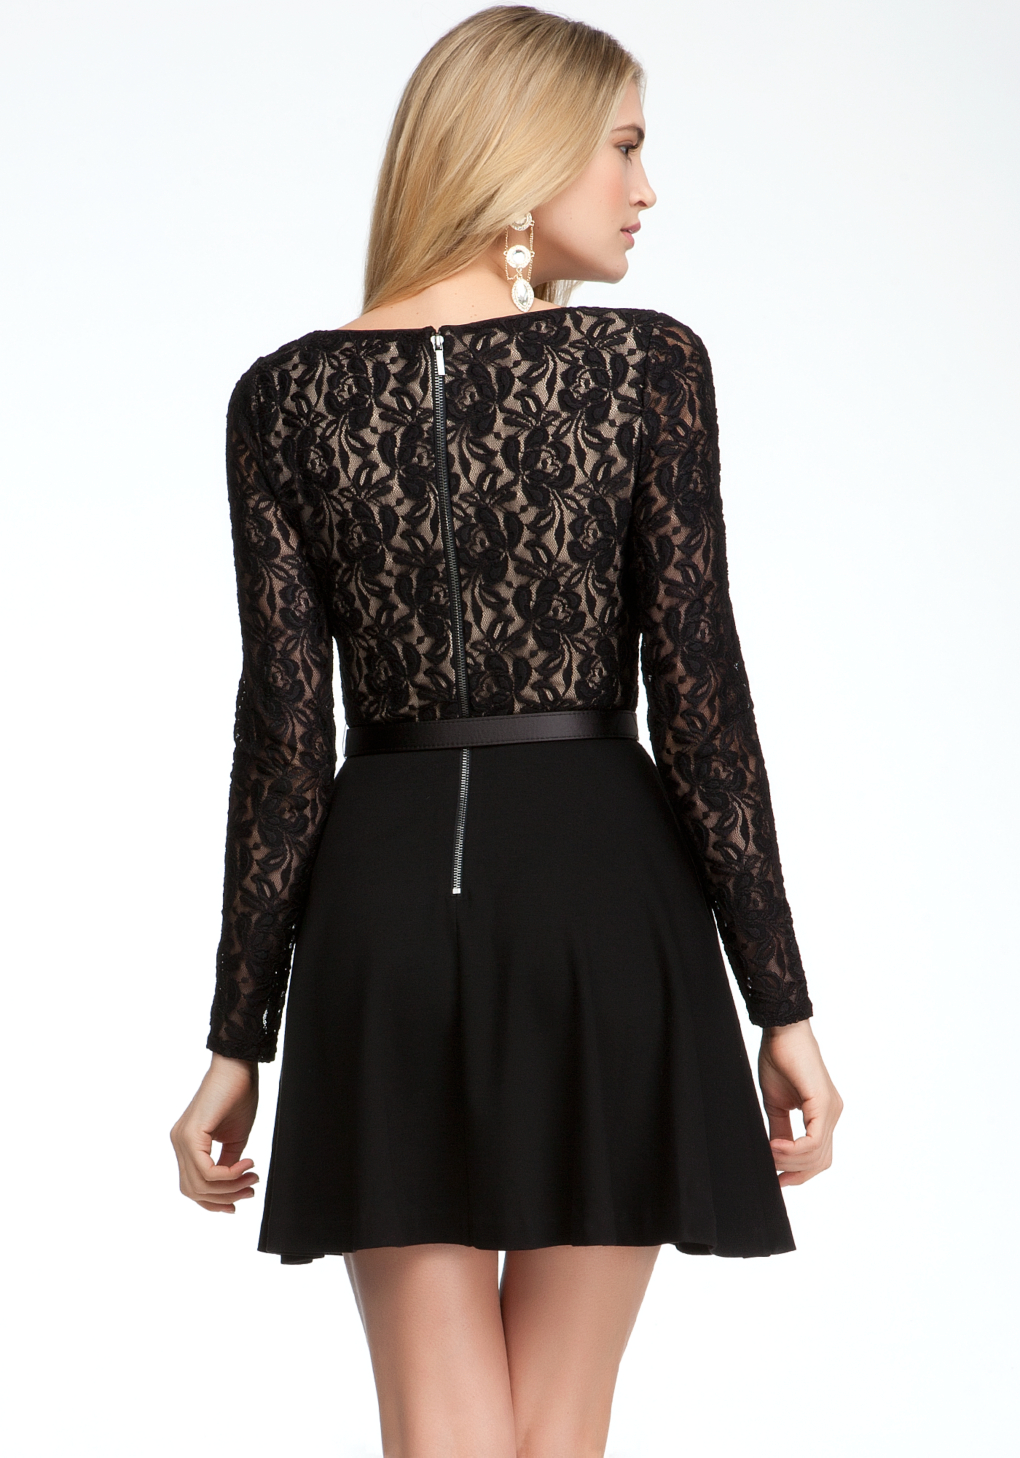 Lyst - Bebe Long Sleeve Fit Flare Dress in Black